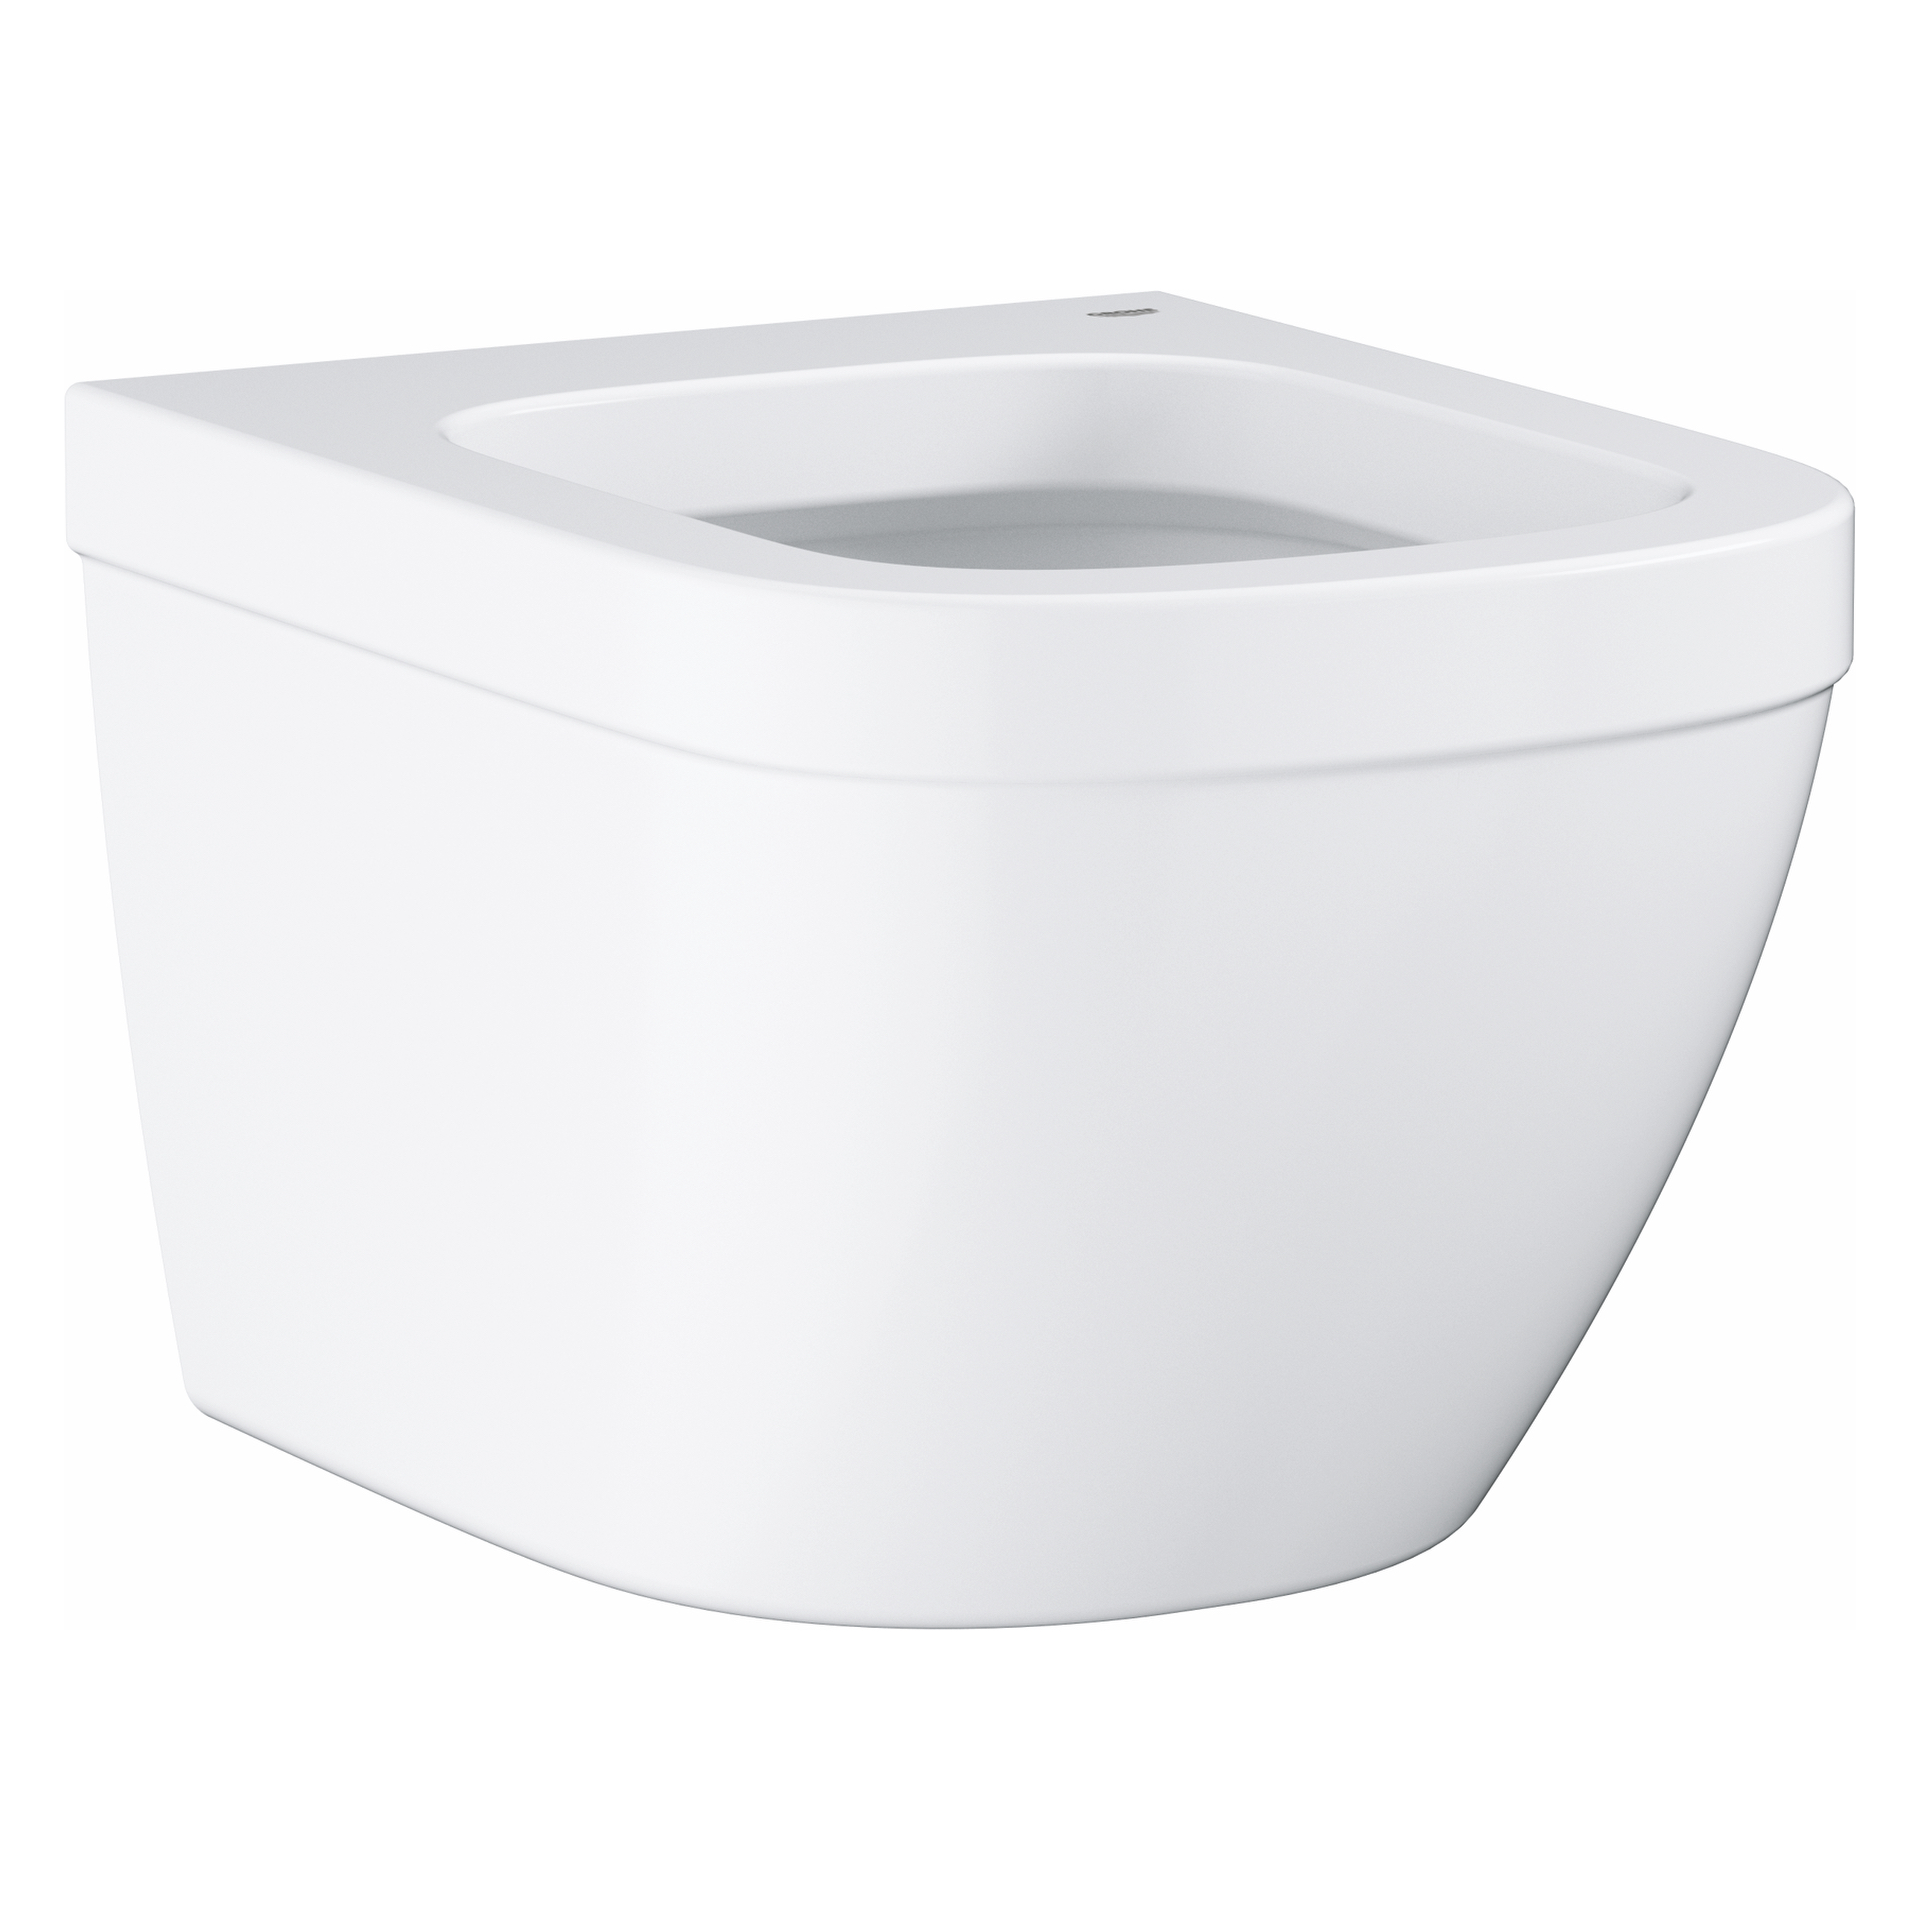 Wand-Tiefspül-WC Euro Keramik 39206, Ausladung 49 cm, Abgang waagerecht, spülrandlos, für Unterputz-Spülkasten, aus Sanitärkeramik, alpinweiß